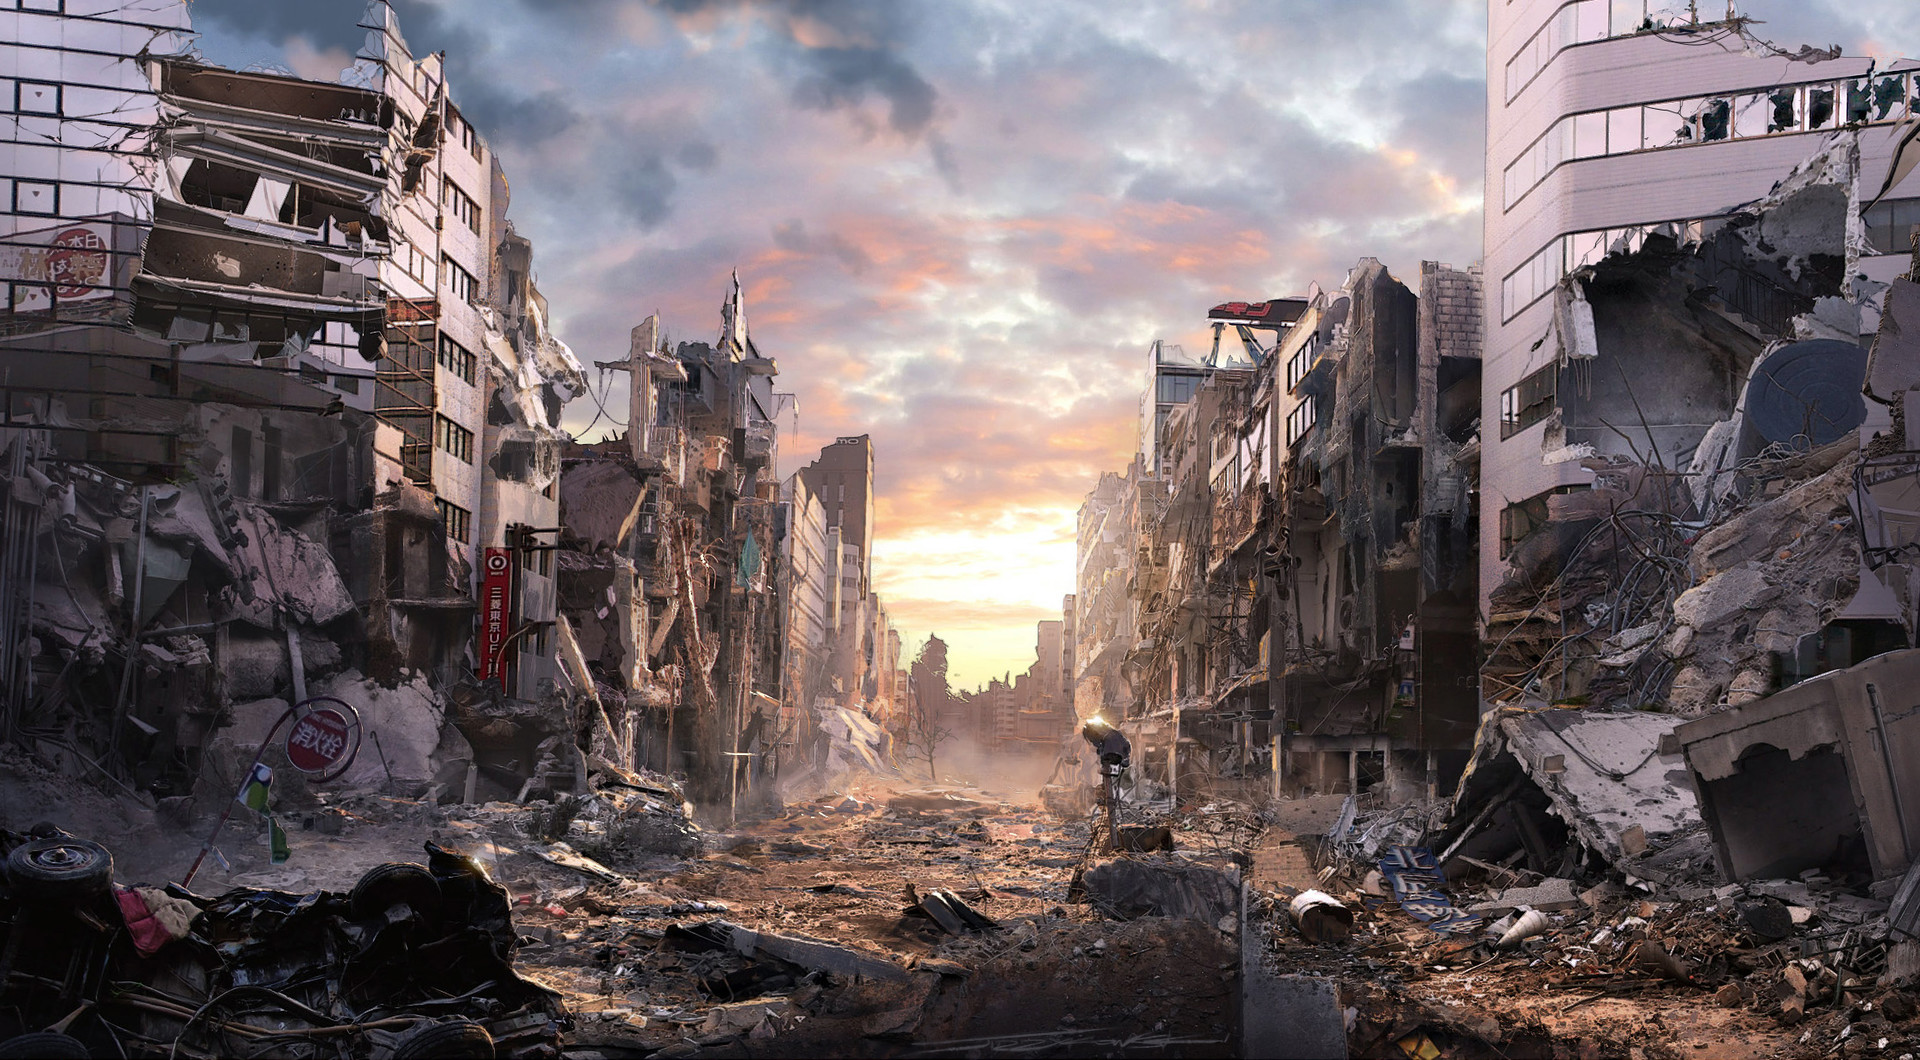 Город после токио. Руины арт апокалипсис Токио. Зомби апокалипсис в Токио. Разрушенный город. Разрушенный город панорама.